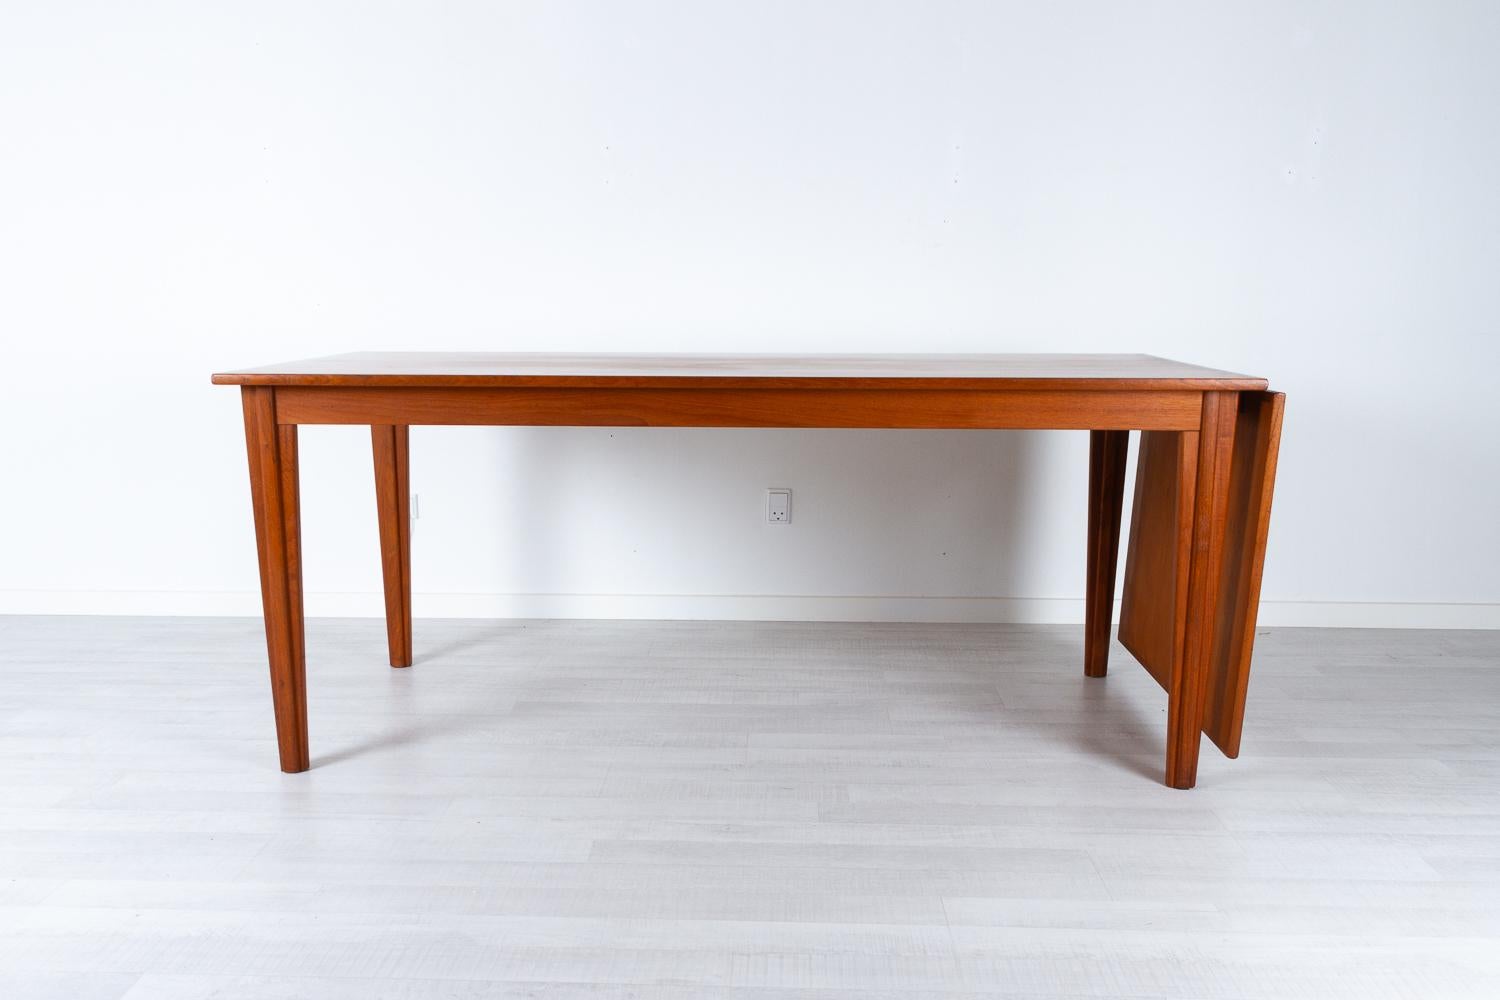 Moderner dänischer Teakholz-Esstisch mit Klappe, 1960er Jahre
Großer Esstisch mit ausziehbarer Platte. Die Verlängerungsplatte kann an einem Ende aufgehängt oder unter der Tischplatte verstaut werden. Die Tischplatte lässt sich sehr leicht